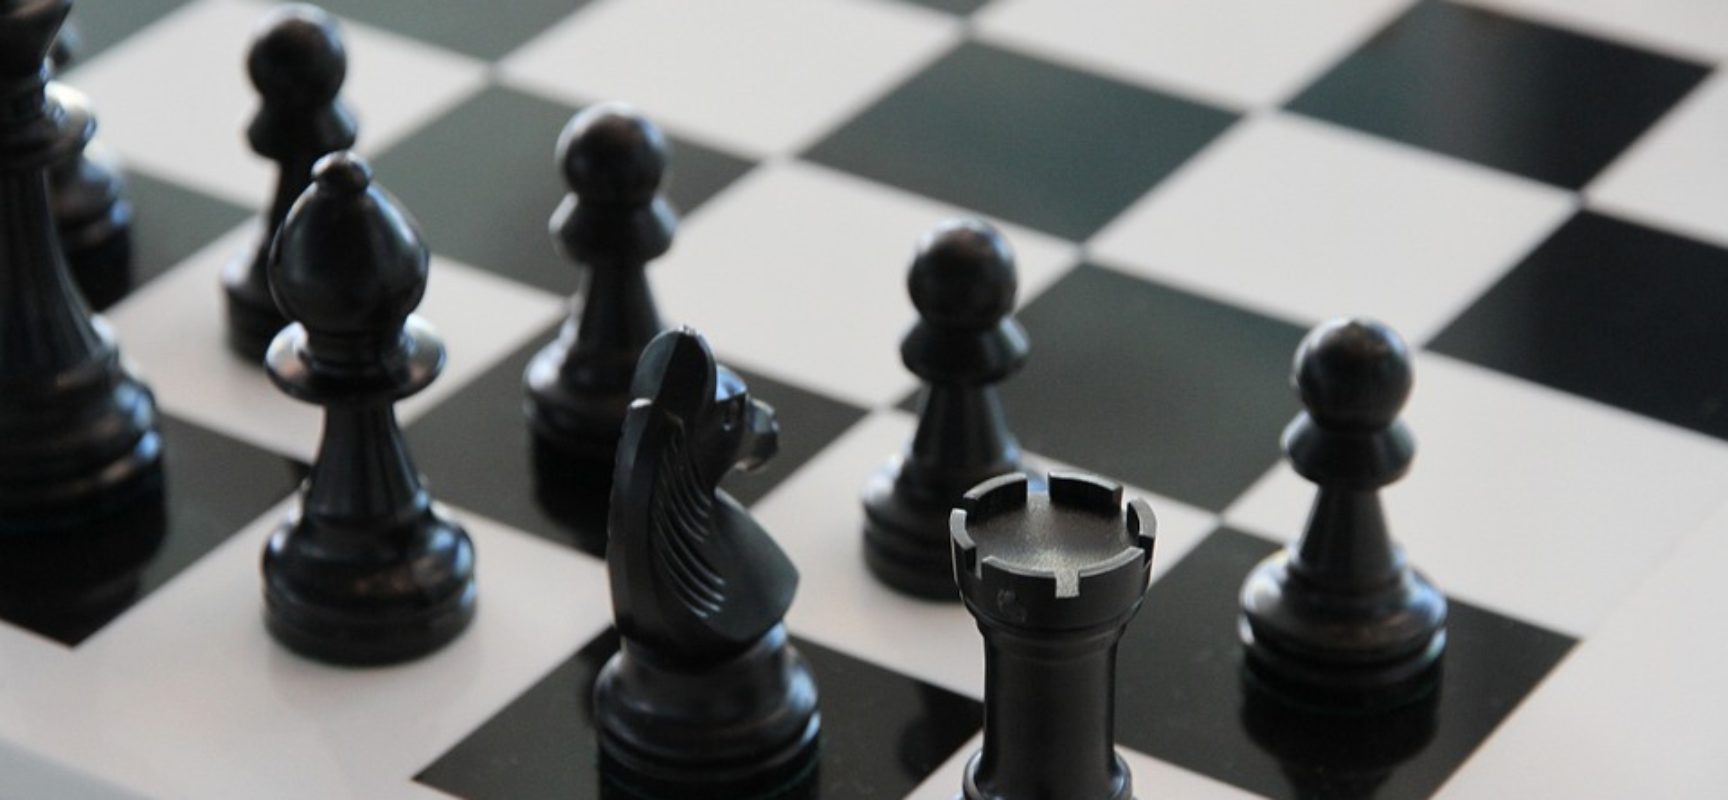 En la imagen aparece un tablero de ajedrez con fichas negras